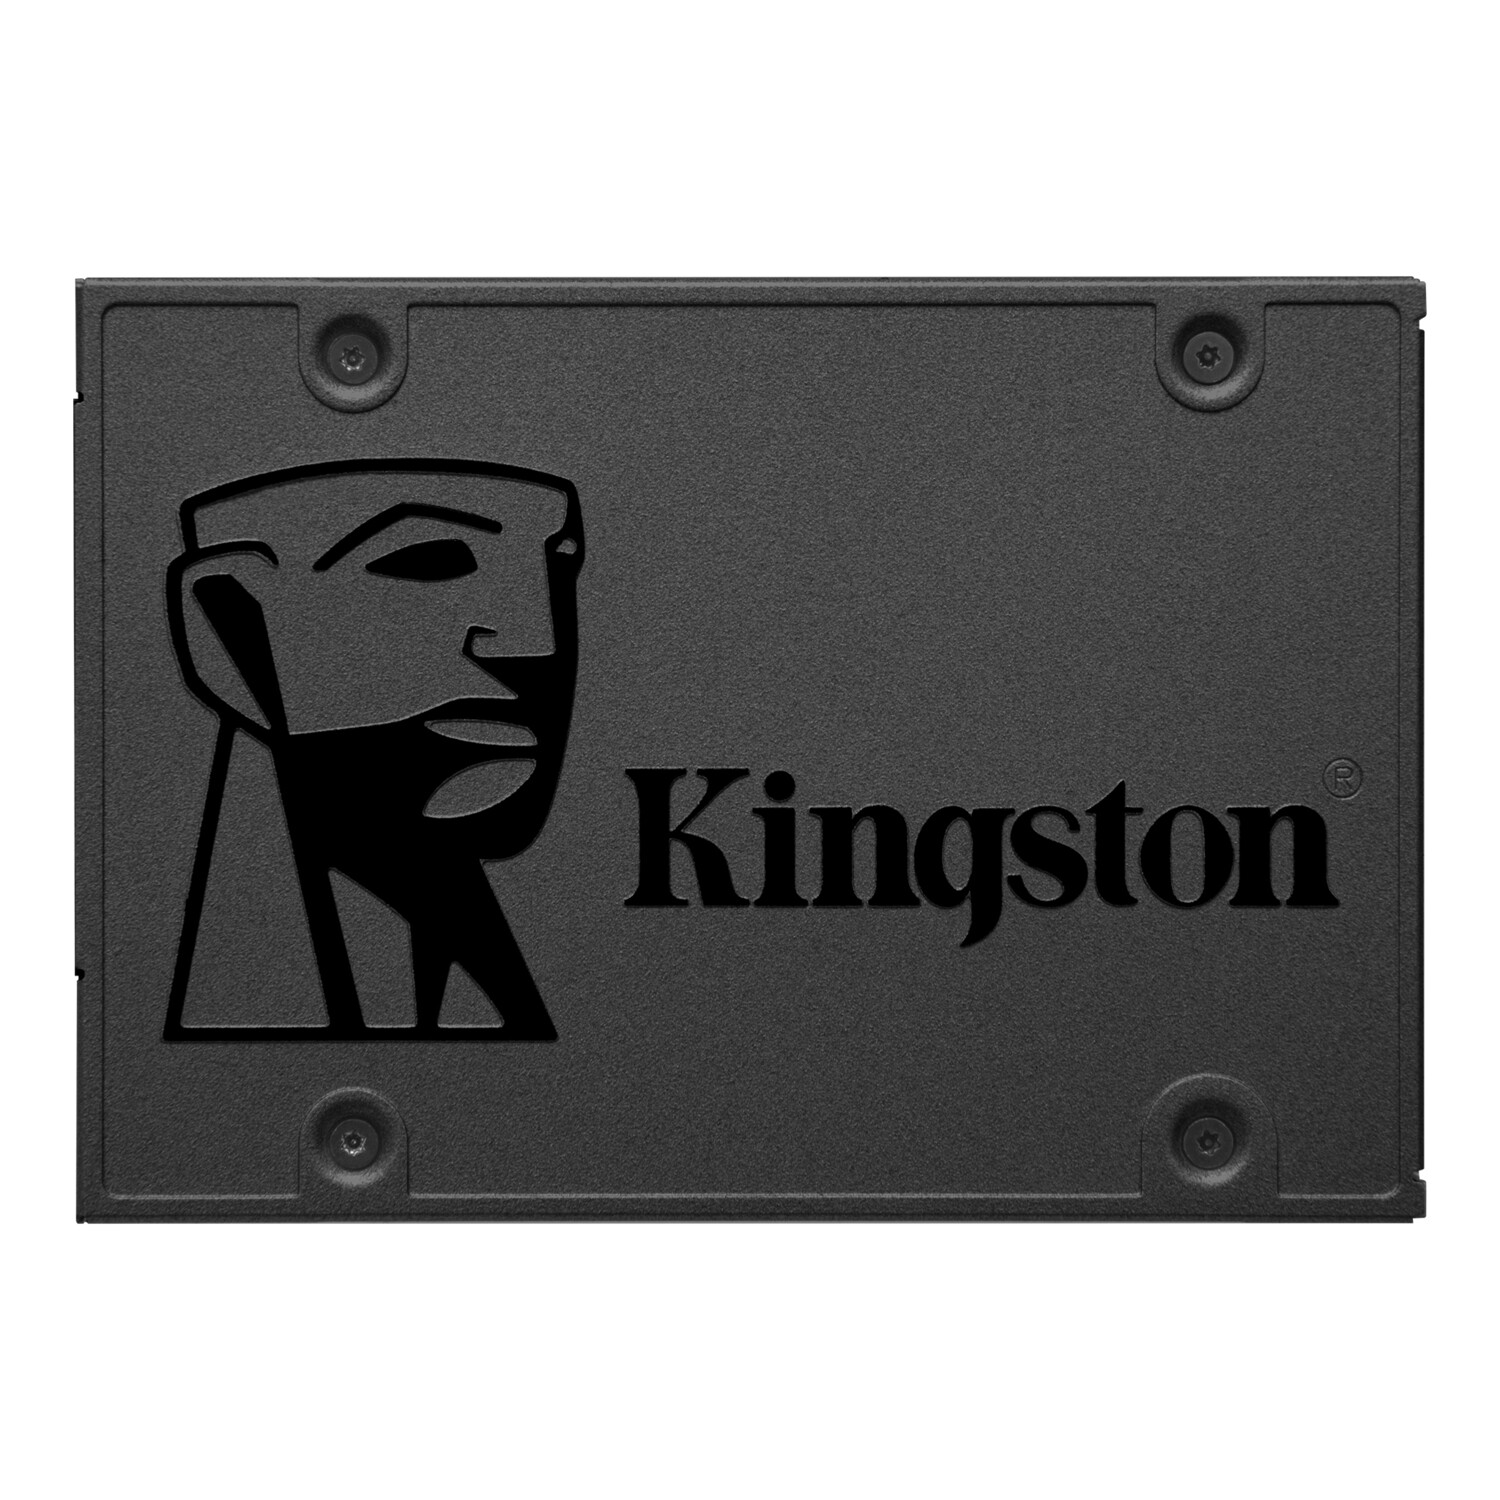 KINGSTON A400 960GB DISCO DE ESTADO SOLIDO